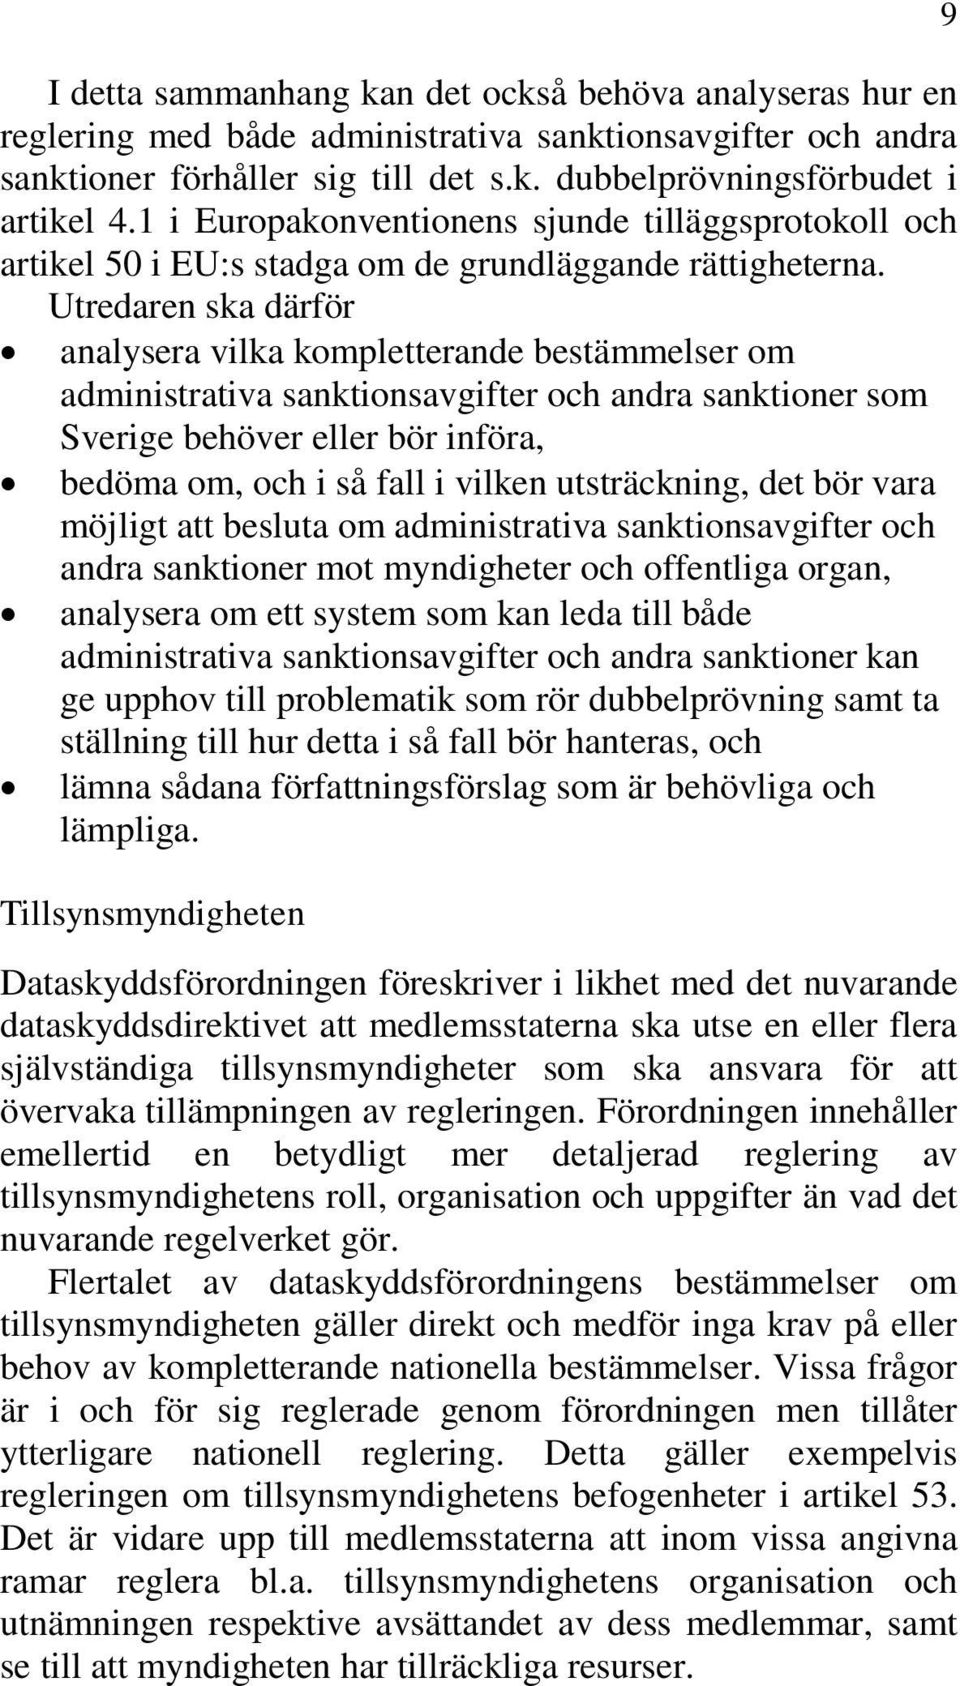 analysera vilka kompletterande bestämmelser om administrativa sanktionsavgifter och andra sanktioner som Sverige behöver eller bör införa, bedöma om, och i så fall i vilken utsträckning, det bör vara